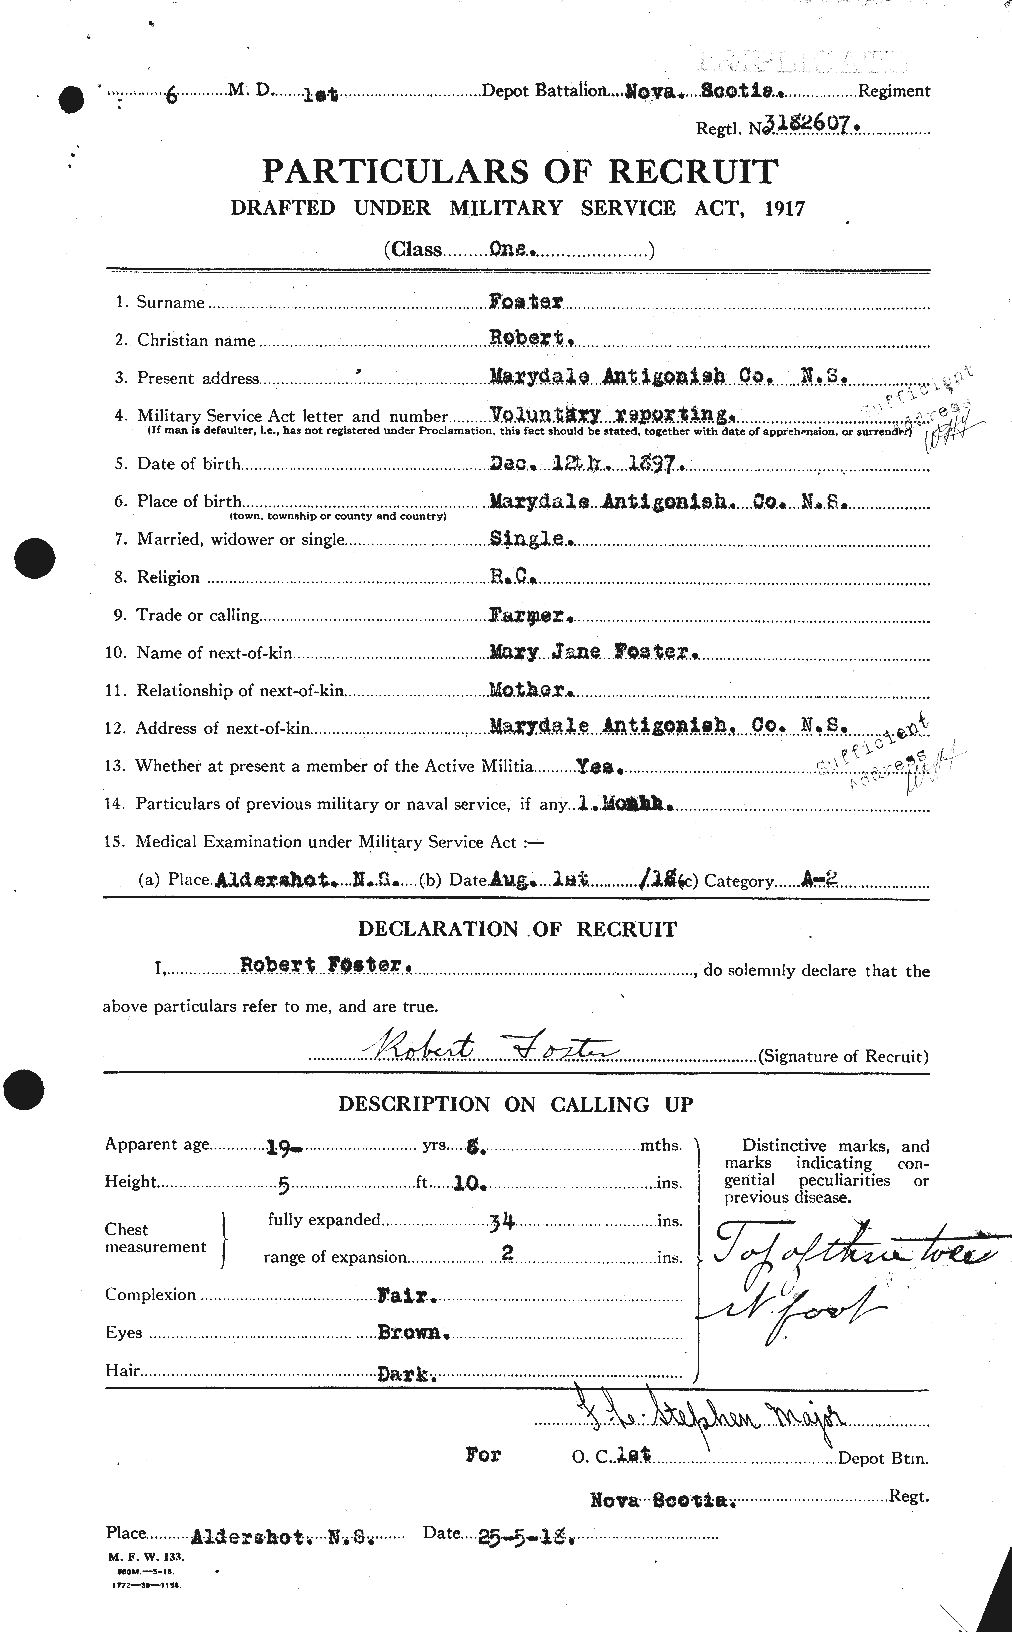 Dossiers du Personnel de la Première Guerre mondiale - CEC 335169a